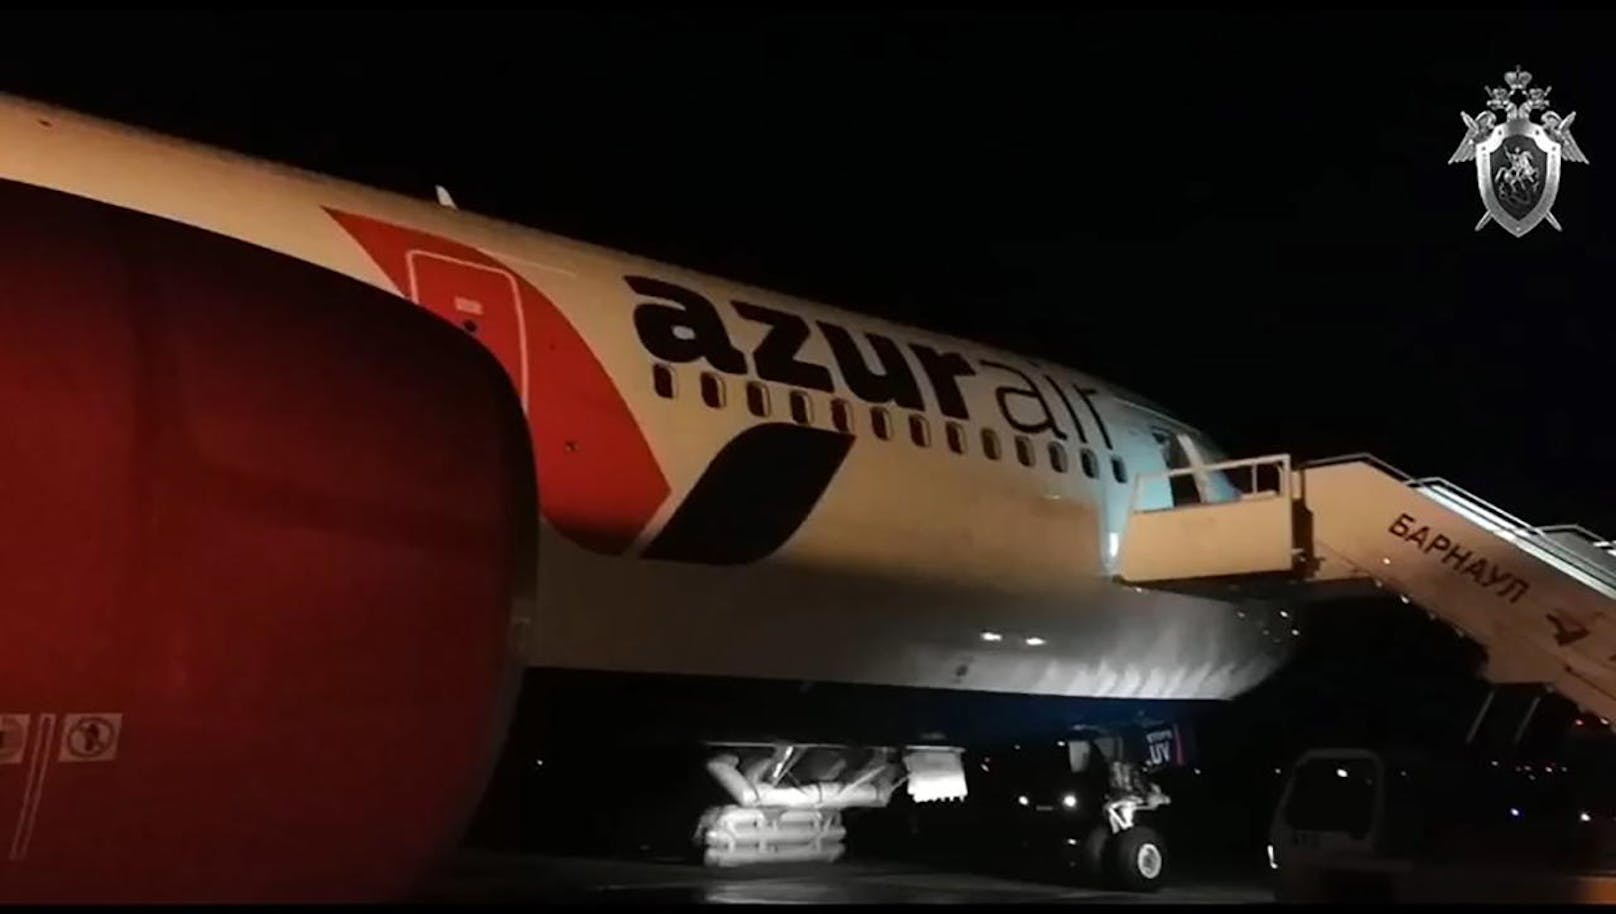 Eine Massenpanik während der Evakuierung dieser Boeing 767-300 der russischen Azur Air endete am 26.12.2019 am Flughafen Barnaul mit 54 teils schwer verletzten Passagieren.